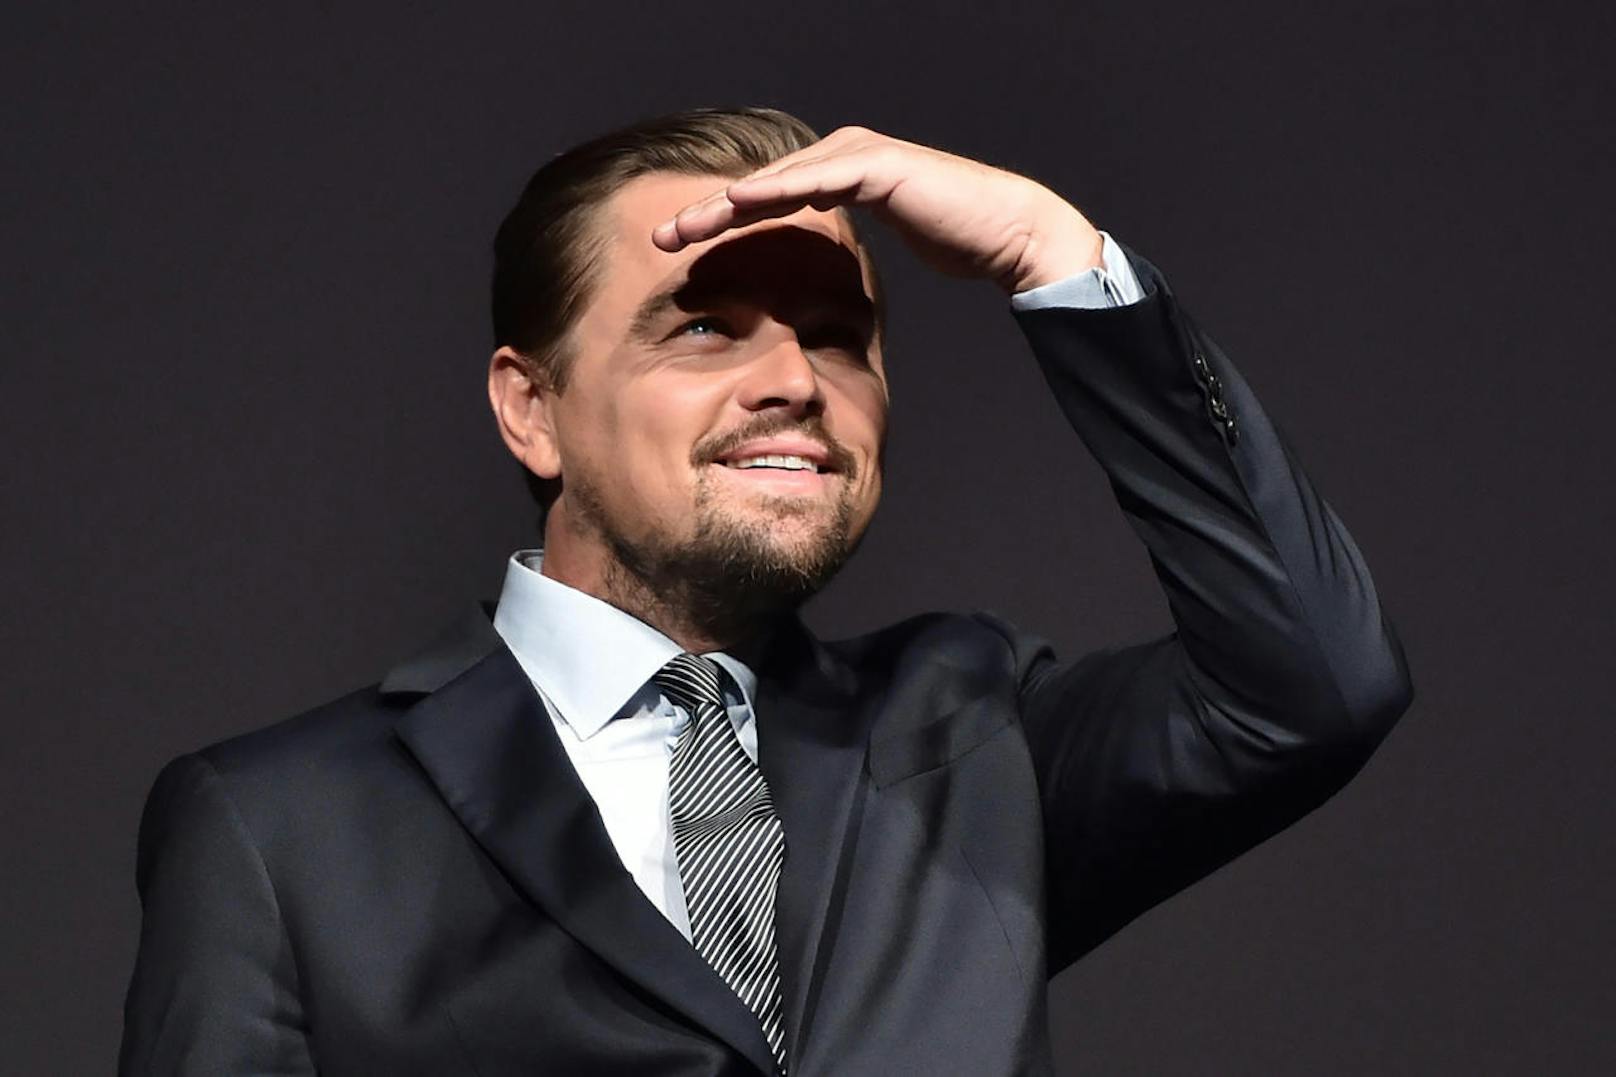 Der Schauspieler Leonardo DiCaprio interessiert sich für Technologie aus der Schweiz: Er ist beim EPFL-Spin-off MindMaze als Berater und Investor eingestiegen.